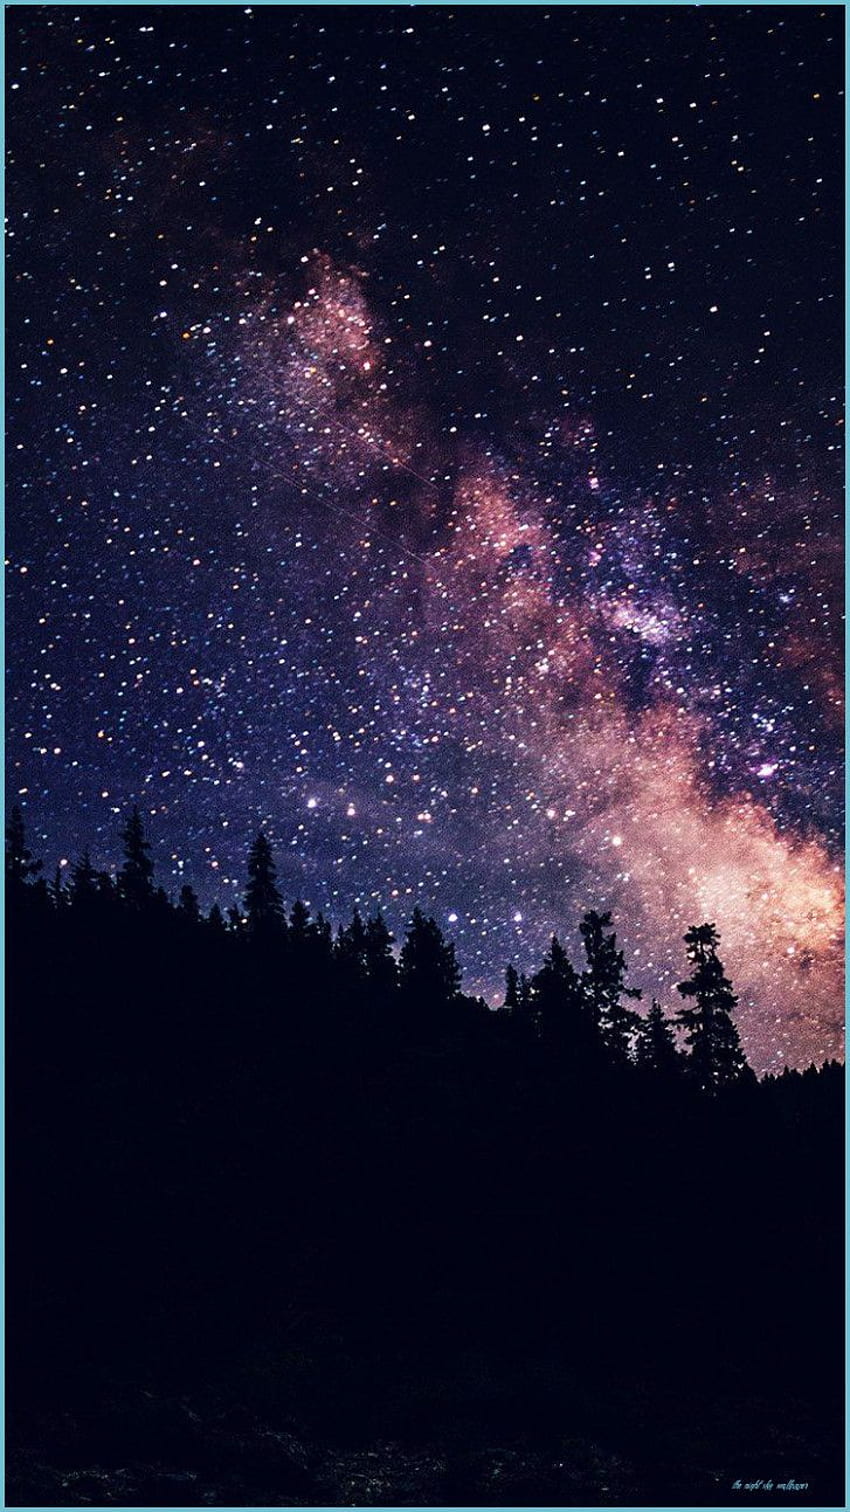 Không gian trắng trời, sao trời rực rỡ và vạn vật tĩnh lặng... bức hình bầu trời đêm tối từ STAR NATURE sẽ giúp bạn tìm thấy sự bình yên trong tâm hồn. Với độ phân giải 1080p và nền tối, bạn sẽ được đắm chìm vào những cảnh tượng tuyệt đẹp không gian vô tận.